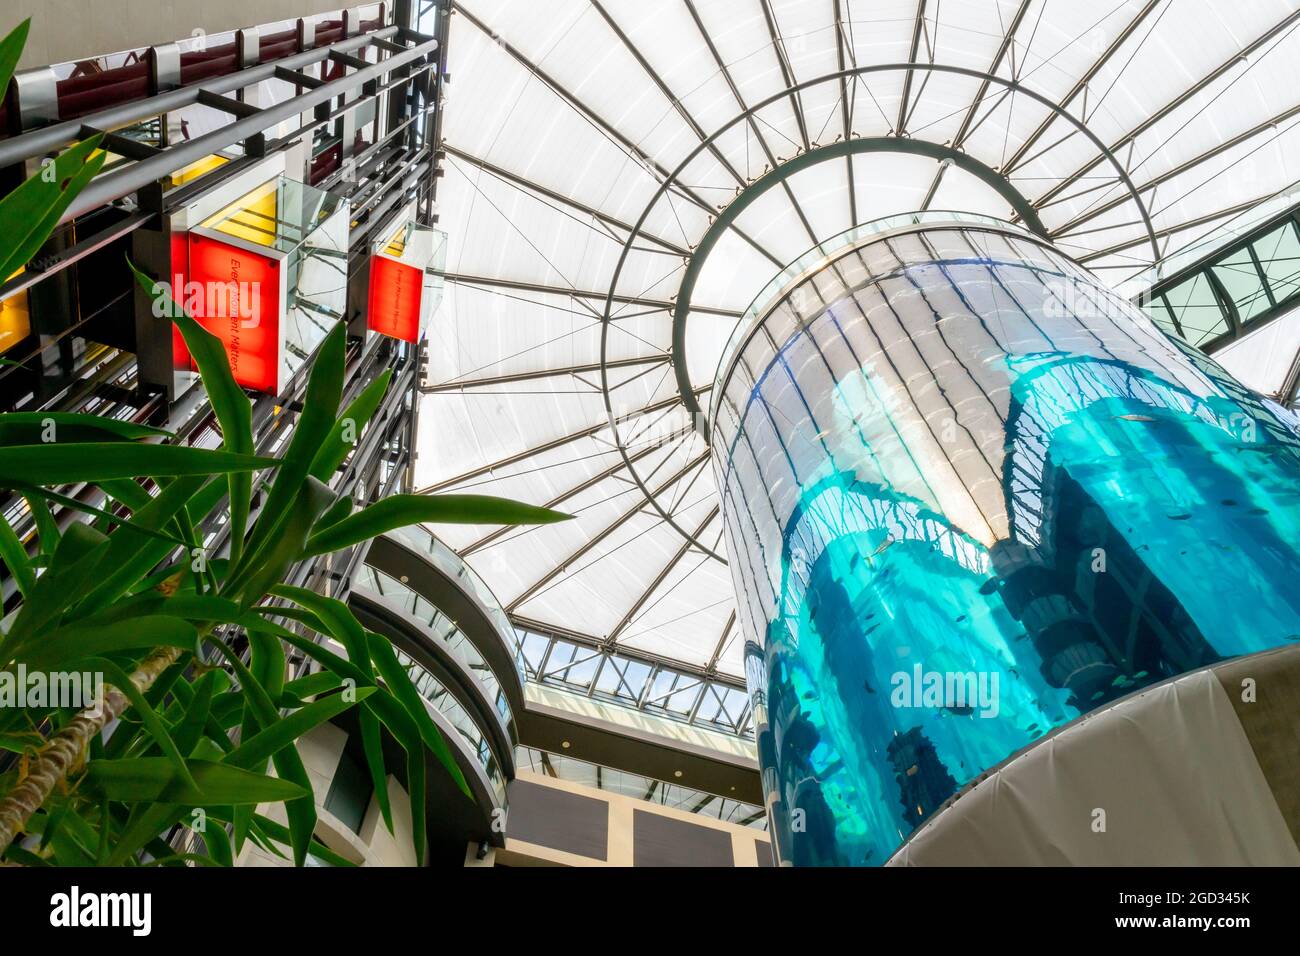 Vue sur AquaDom, toit, ascenseurs dans le hall de l'hôtel Radisson Blue, Berlin, Allemagne Banque D'Images